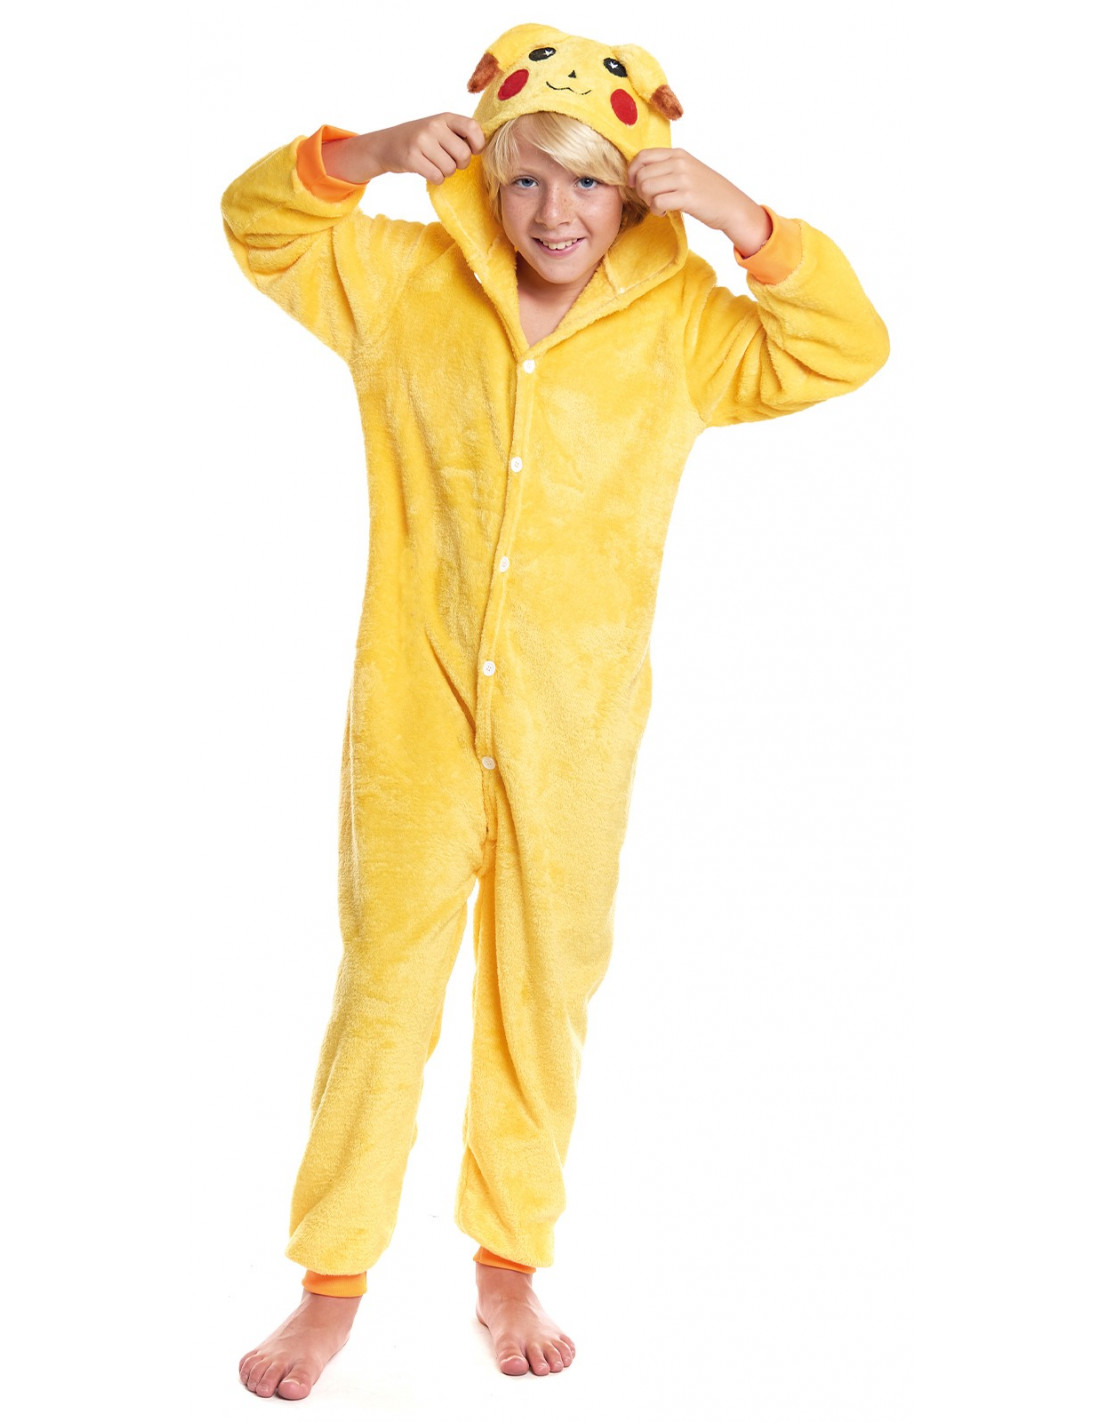 Pikachu Adulto Mascota Disfraz Vestido Halloween Cumpleaños Fiesta Juegos  con disfraces Trajes